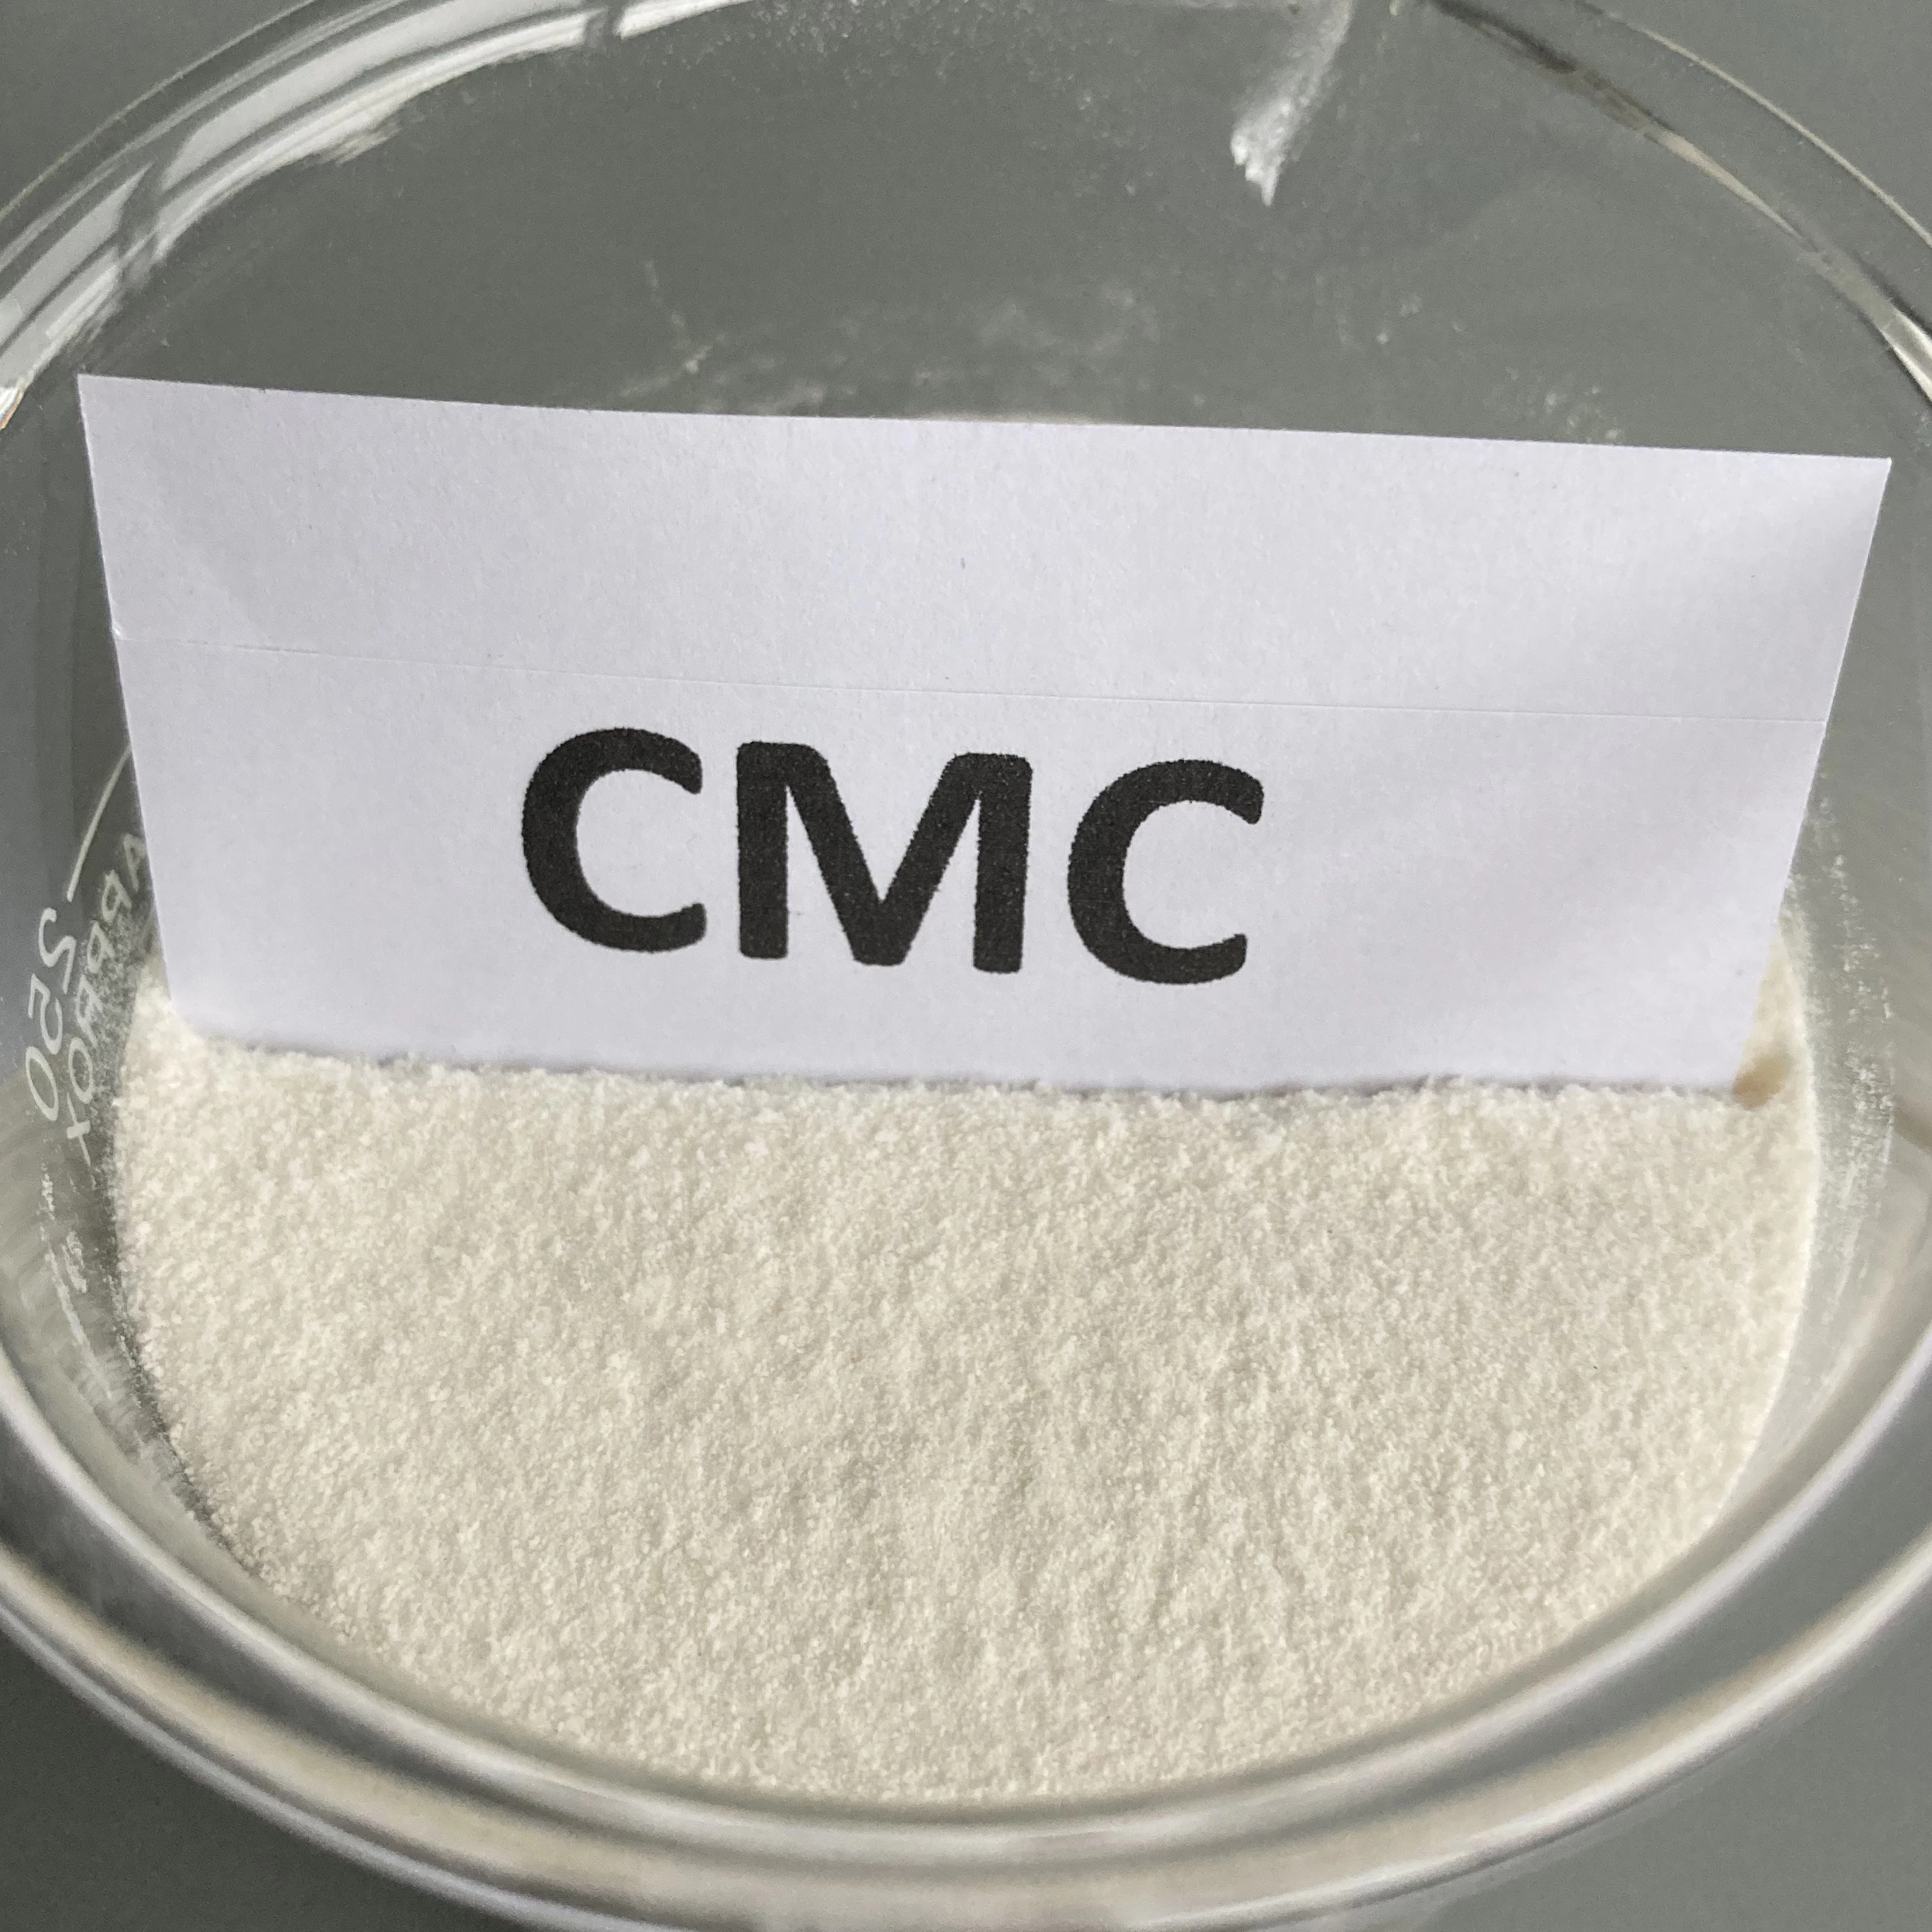 Carboximetilcelulosa de sodio (CMC)